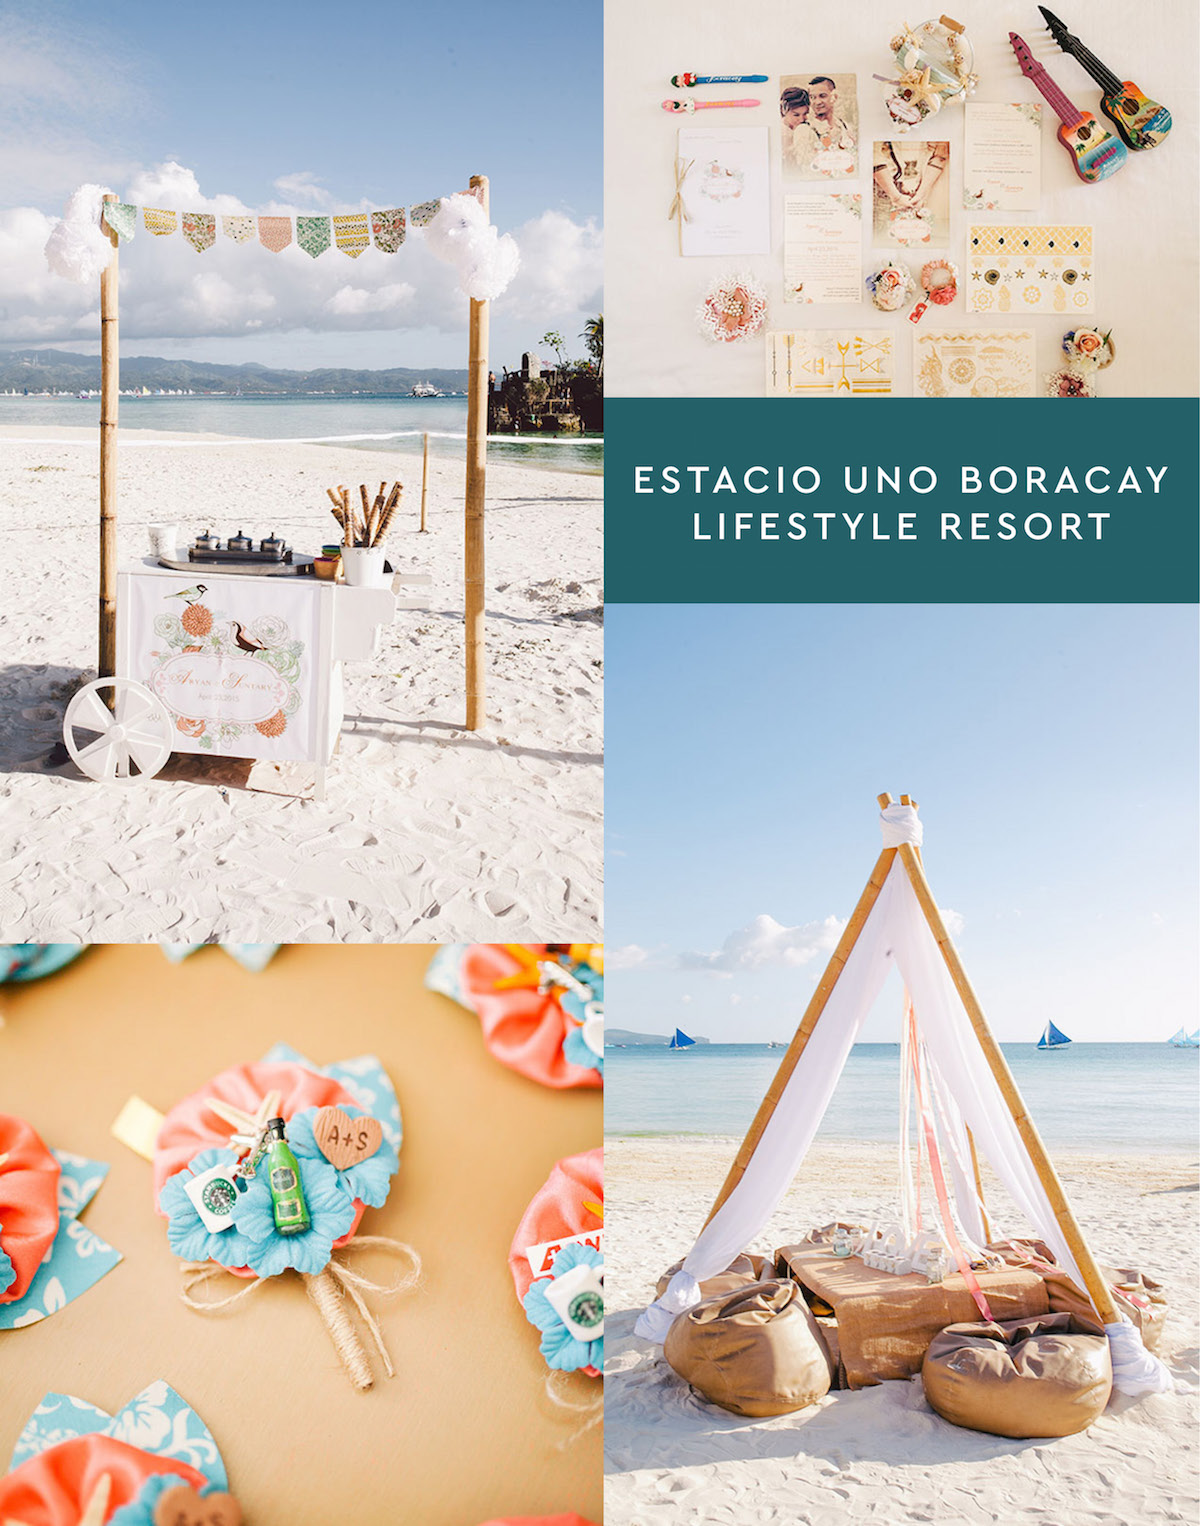 Estacio Uno Boracay Lifestyle Resort